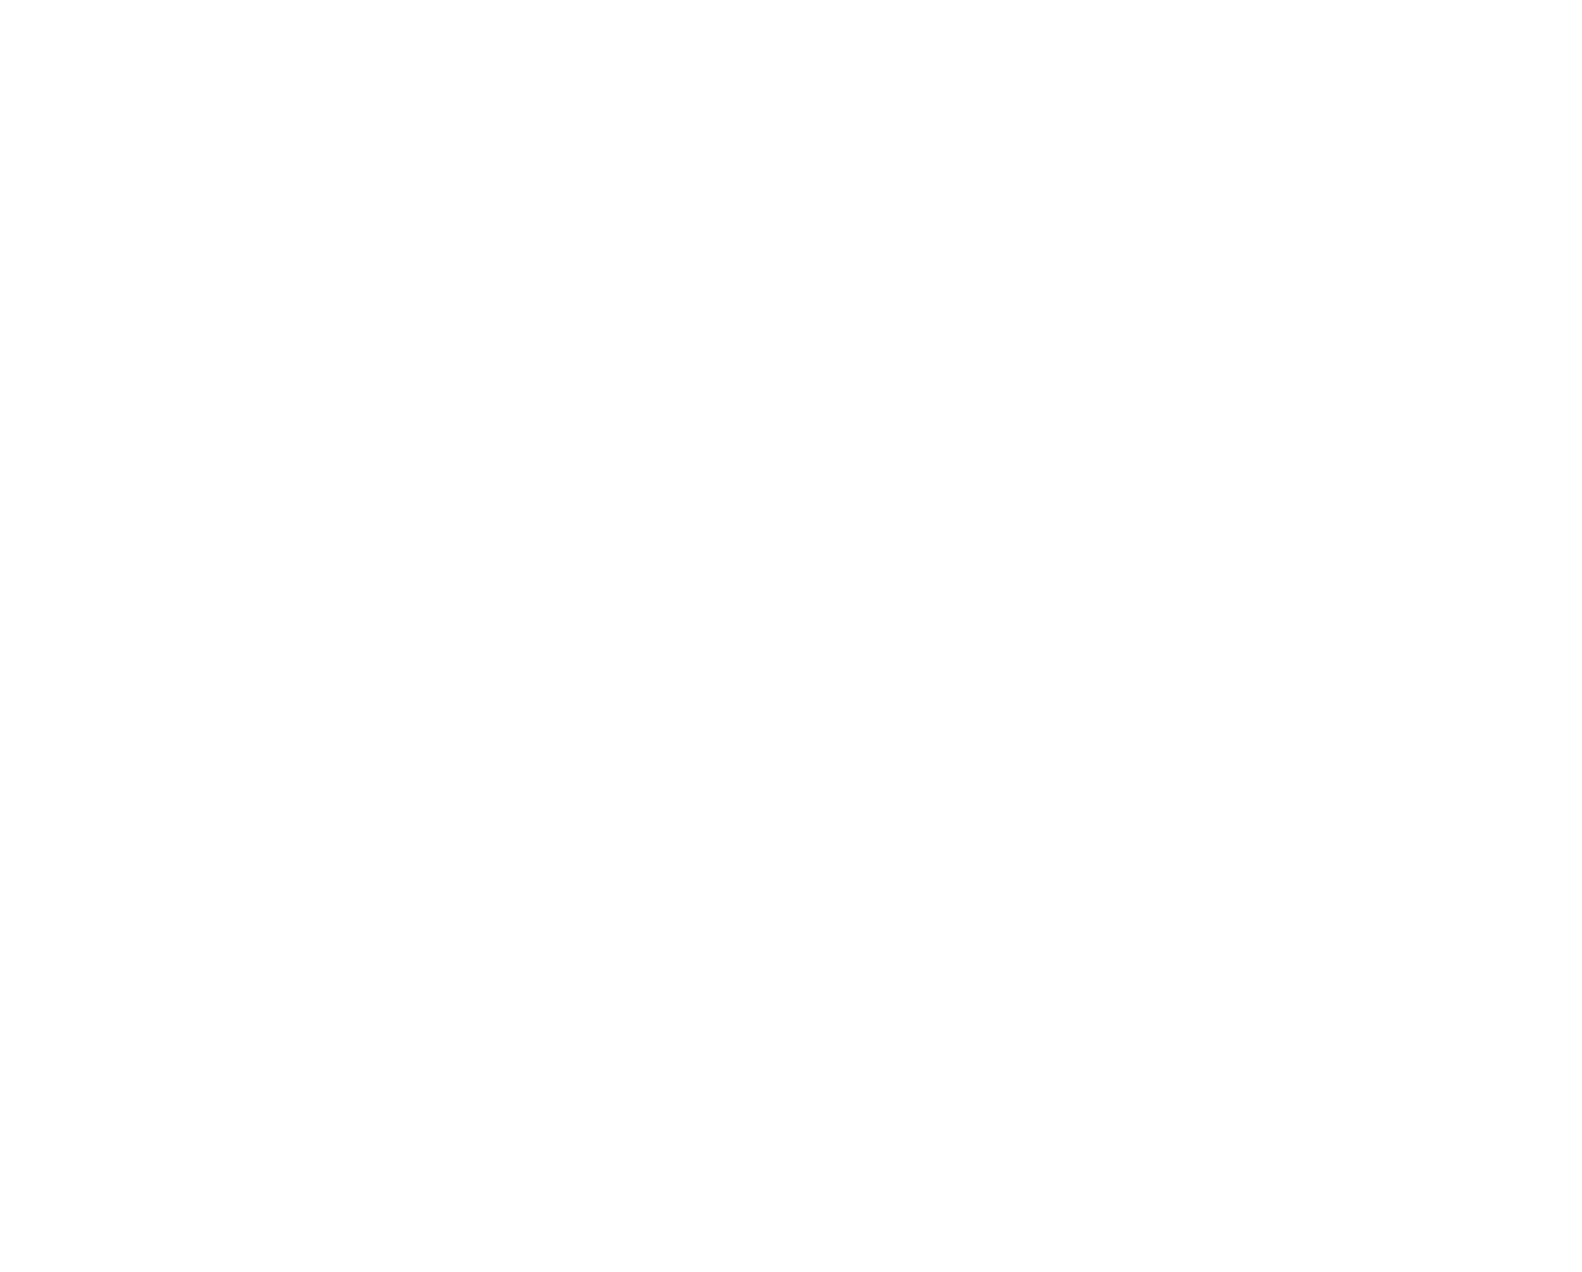 Squarespace logo pour fonds sombres (PNG transparent)